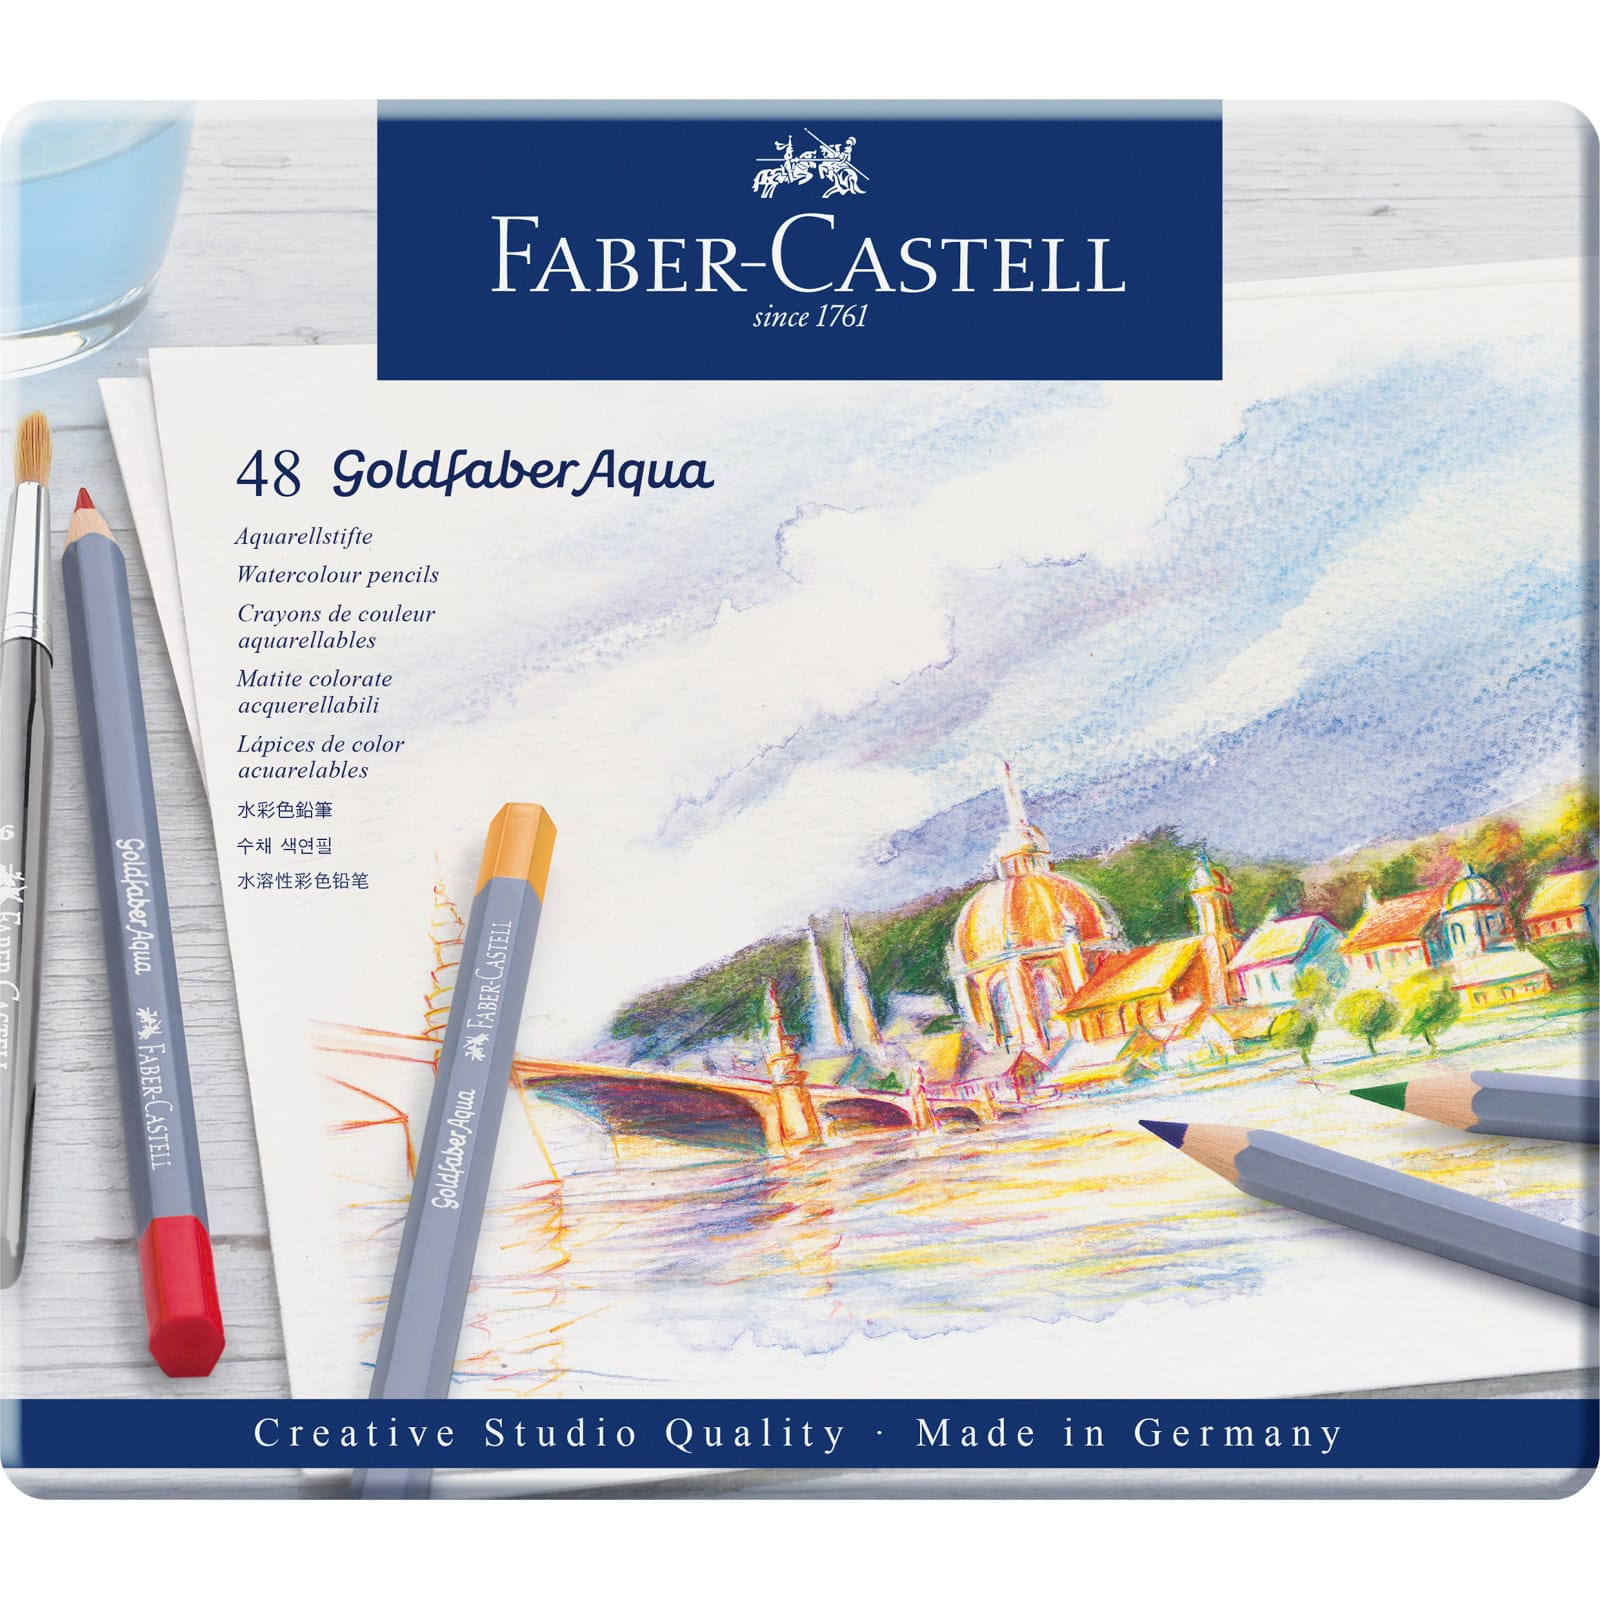 Faber-Castell&#xAE; Goldfaber Aqua 48 Color Watercolor Pencil Tin Set